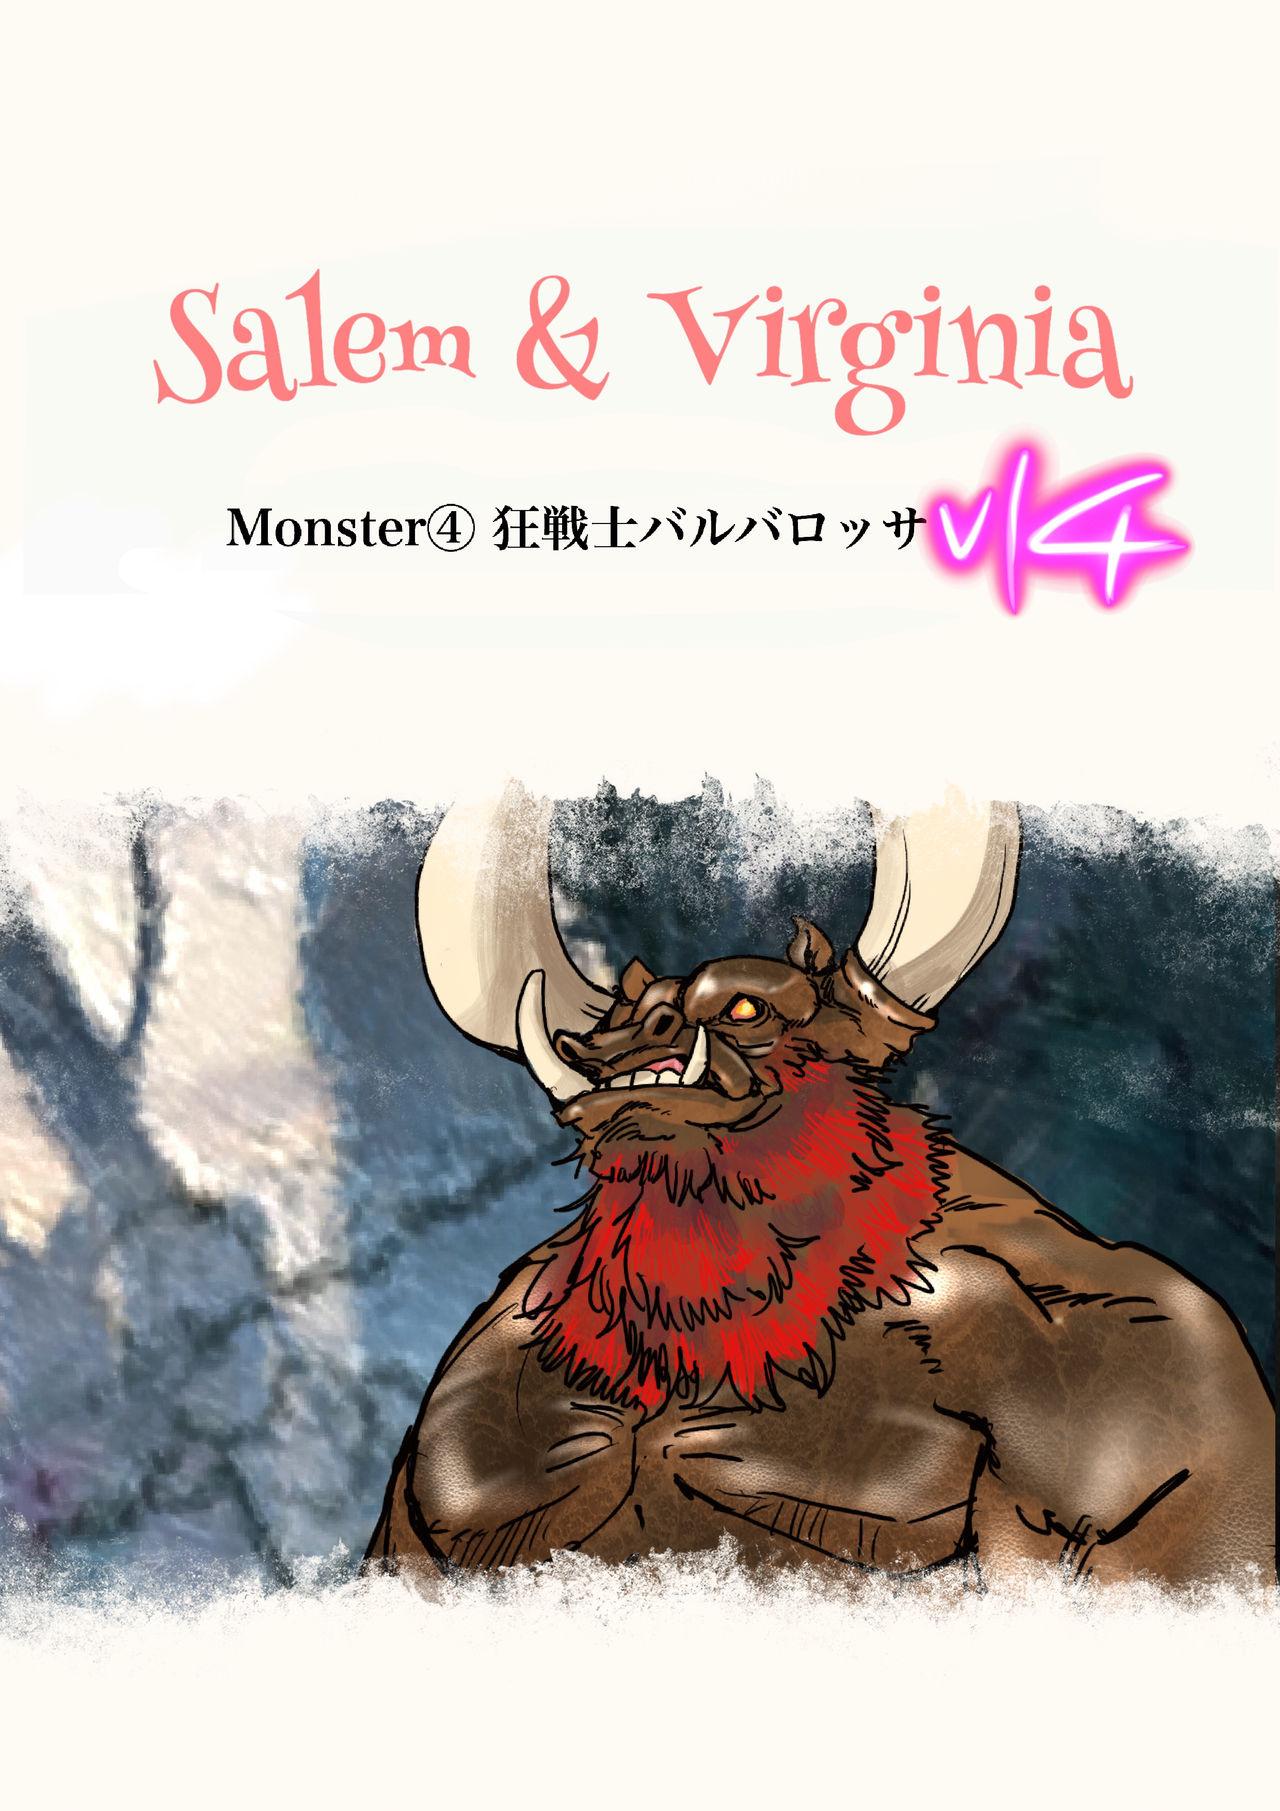 Salem & Virginia 127